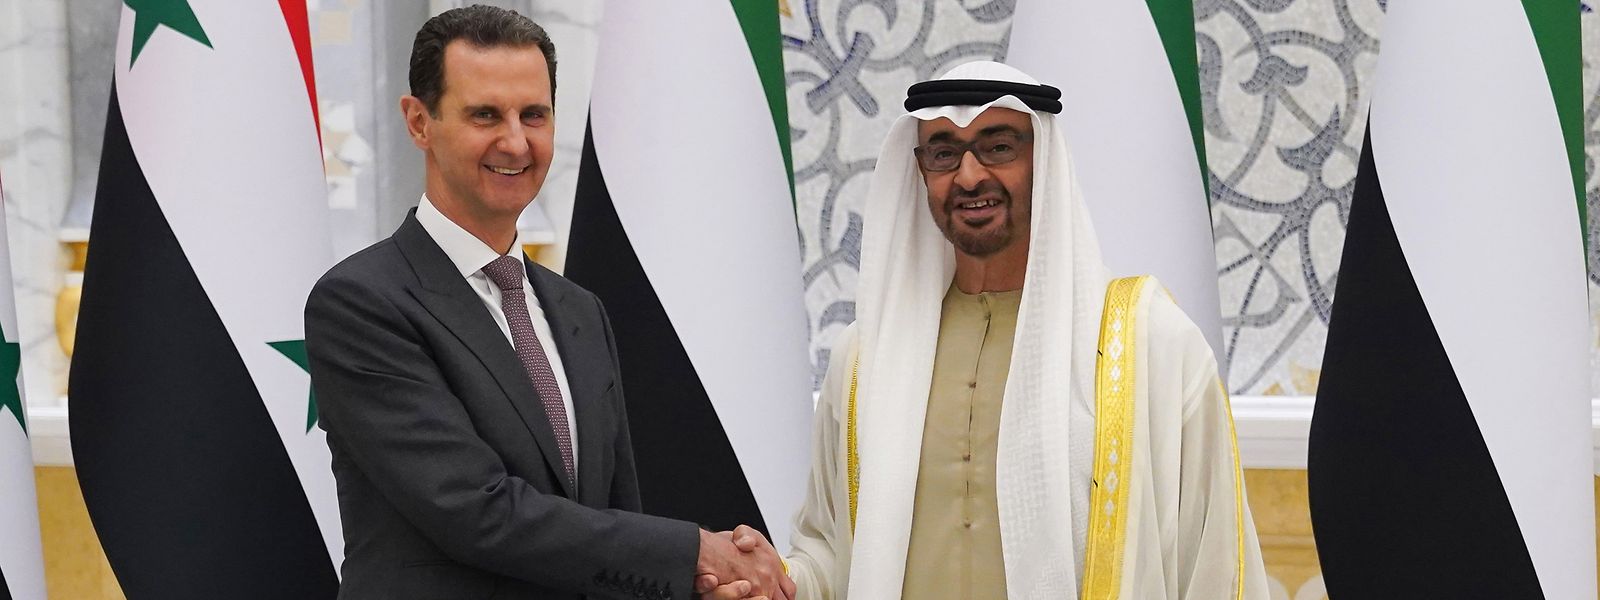 Das Foto zeigt Muhammad bin Zayid Al Nahyan (r.), Präsident der Vereinigten Arabischen Emirate (VAE), beim Empfang von Baschar al-Assad, Präsident von Syrien, während seines offiziellen Besuchs in den VAE.